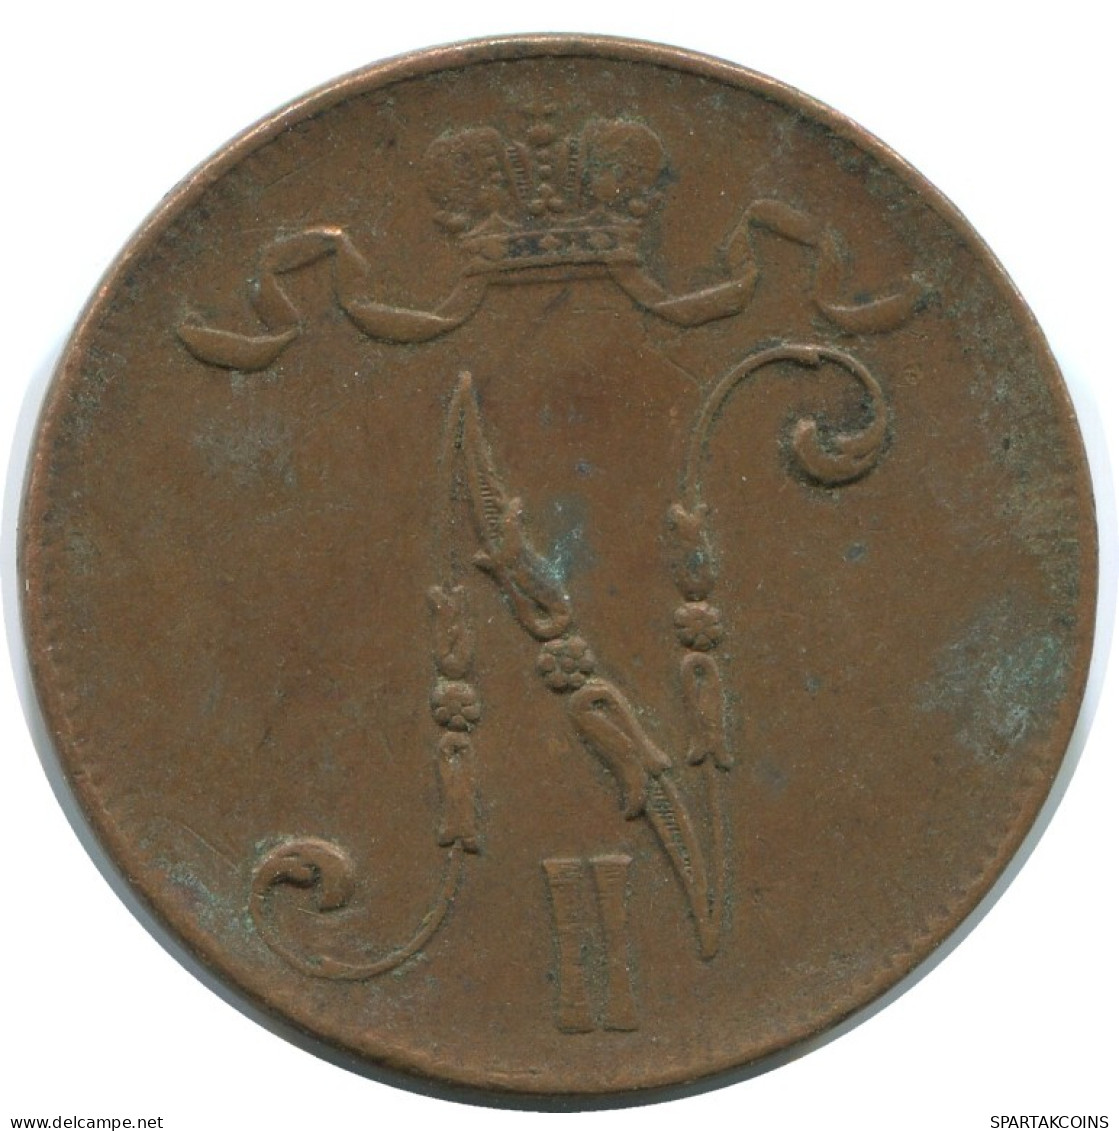 5 PENNIA 1916 FINLANDIA FINLAND Moneda RUSIA RUSSIA EMPIRE #AB196.5.E.A - Finnland